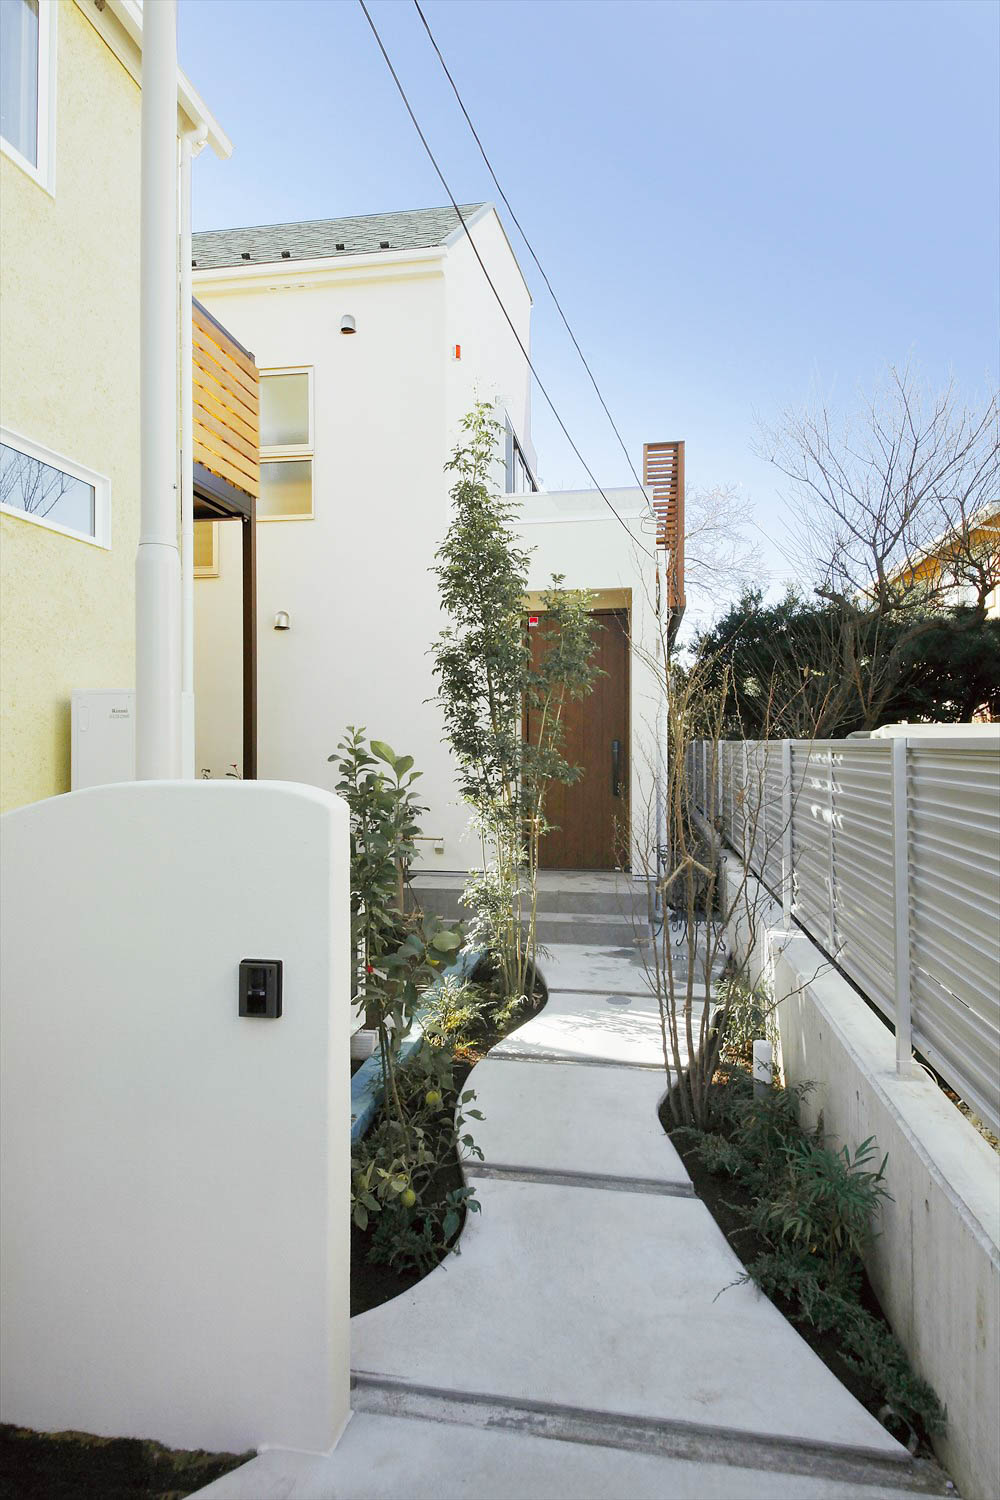 おしゃれな外構をデザインするためのポイントとは 神奈川で注文住宅ならホームスタイリング